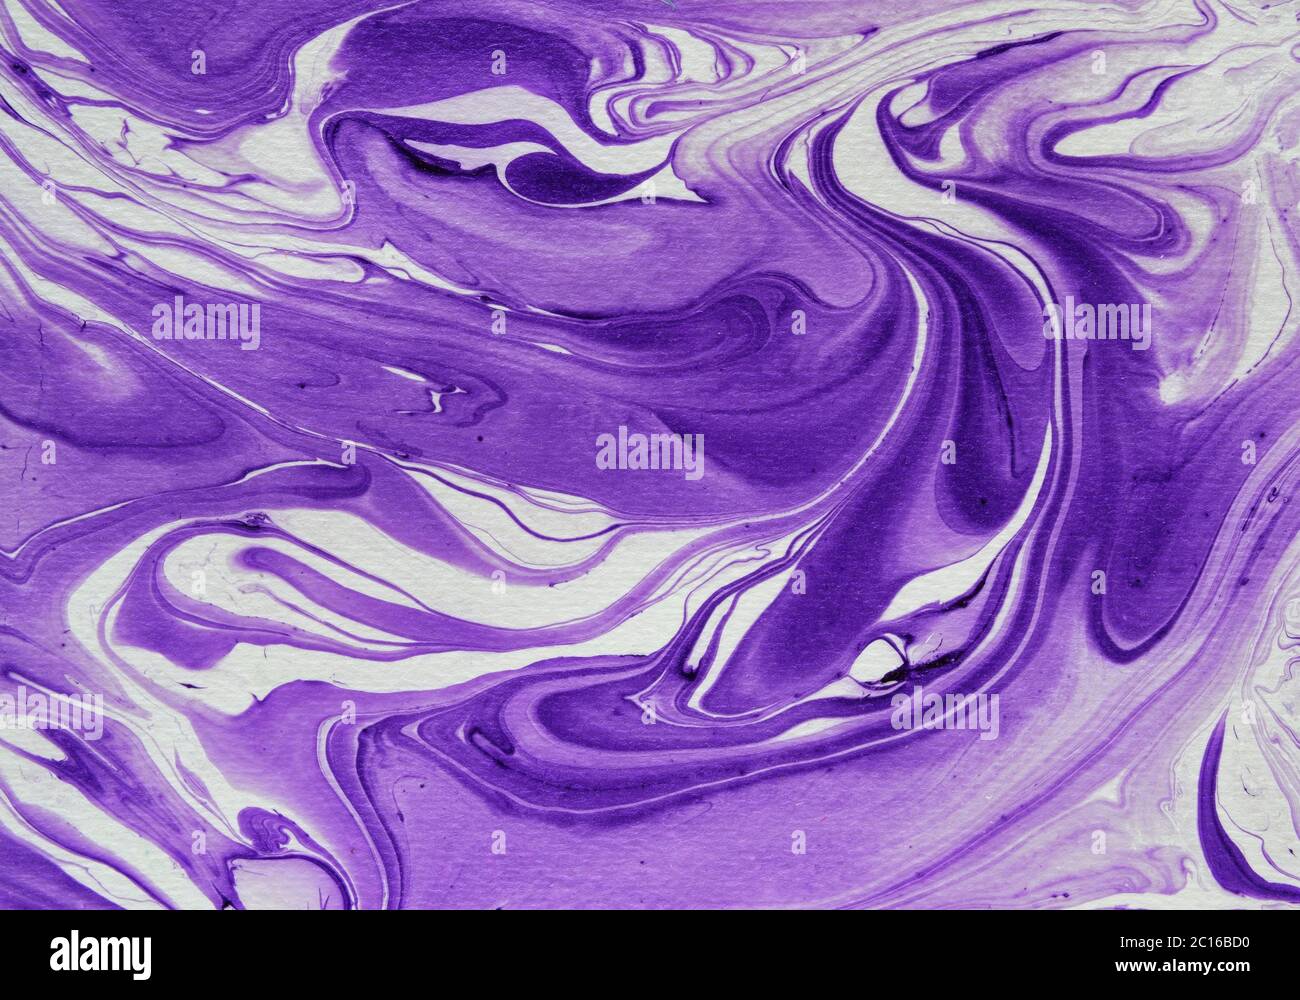 Nền đá hoa văn màu tím (purple marble effect background texture) Được tạo ra từ những đường vân đá uốn lượn màu tím đậm, nền đá hoa văn màu tím tuyệt đẹp này chắc chắn sẽ giúp kéo dài sự chú ý của người xem. Nó là lựa chọn tuyệt vời để làm nền cho các thiết kế độc đáo và sáng tạo.